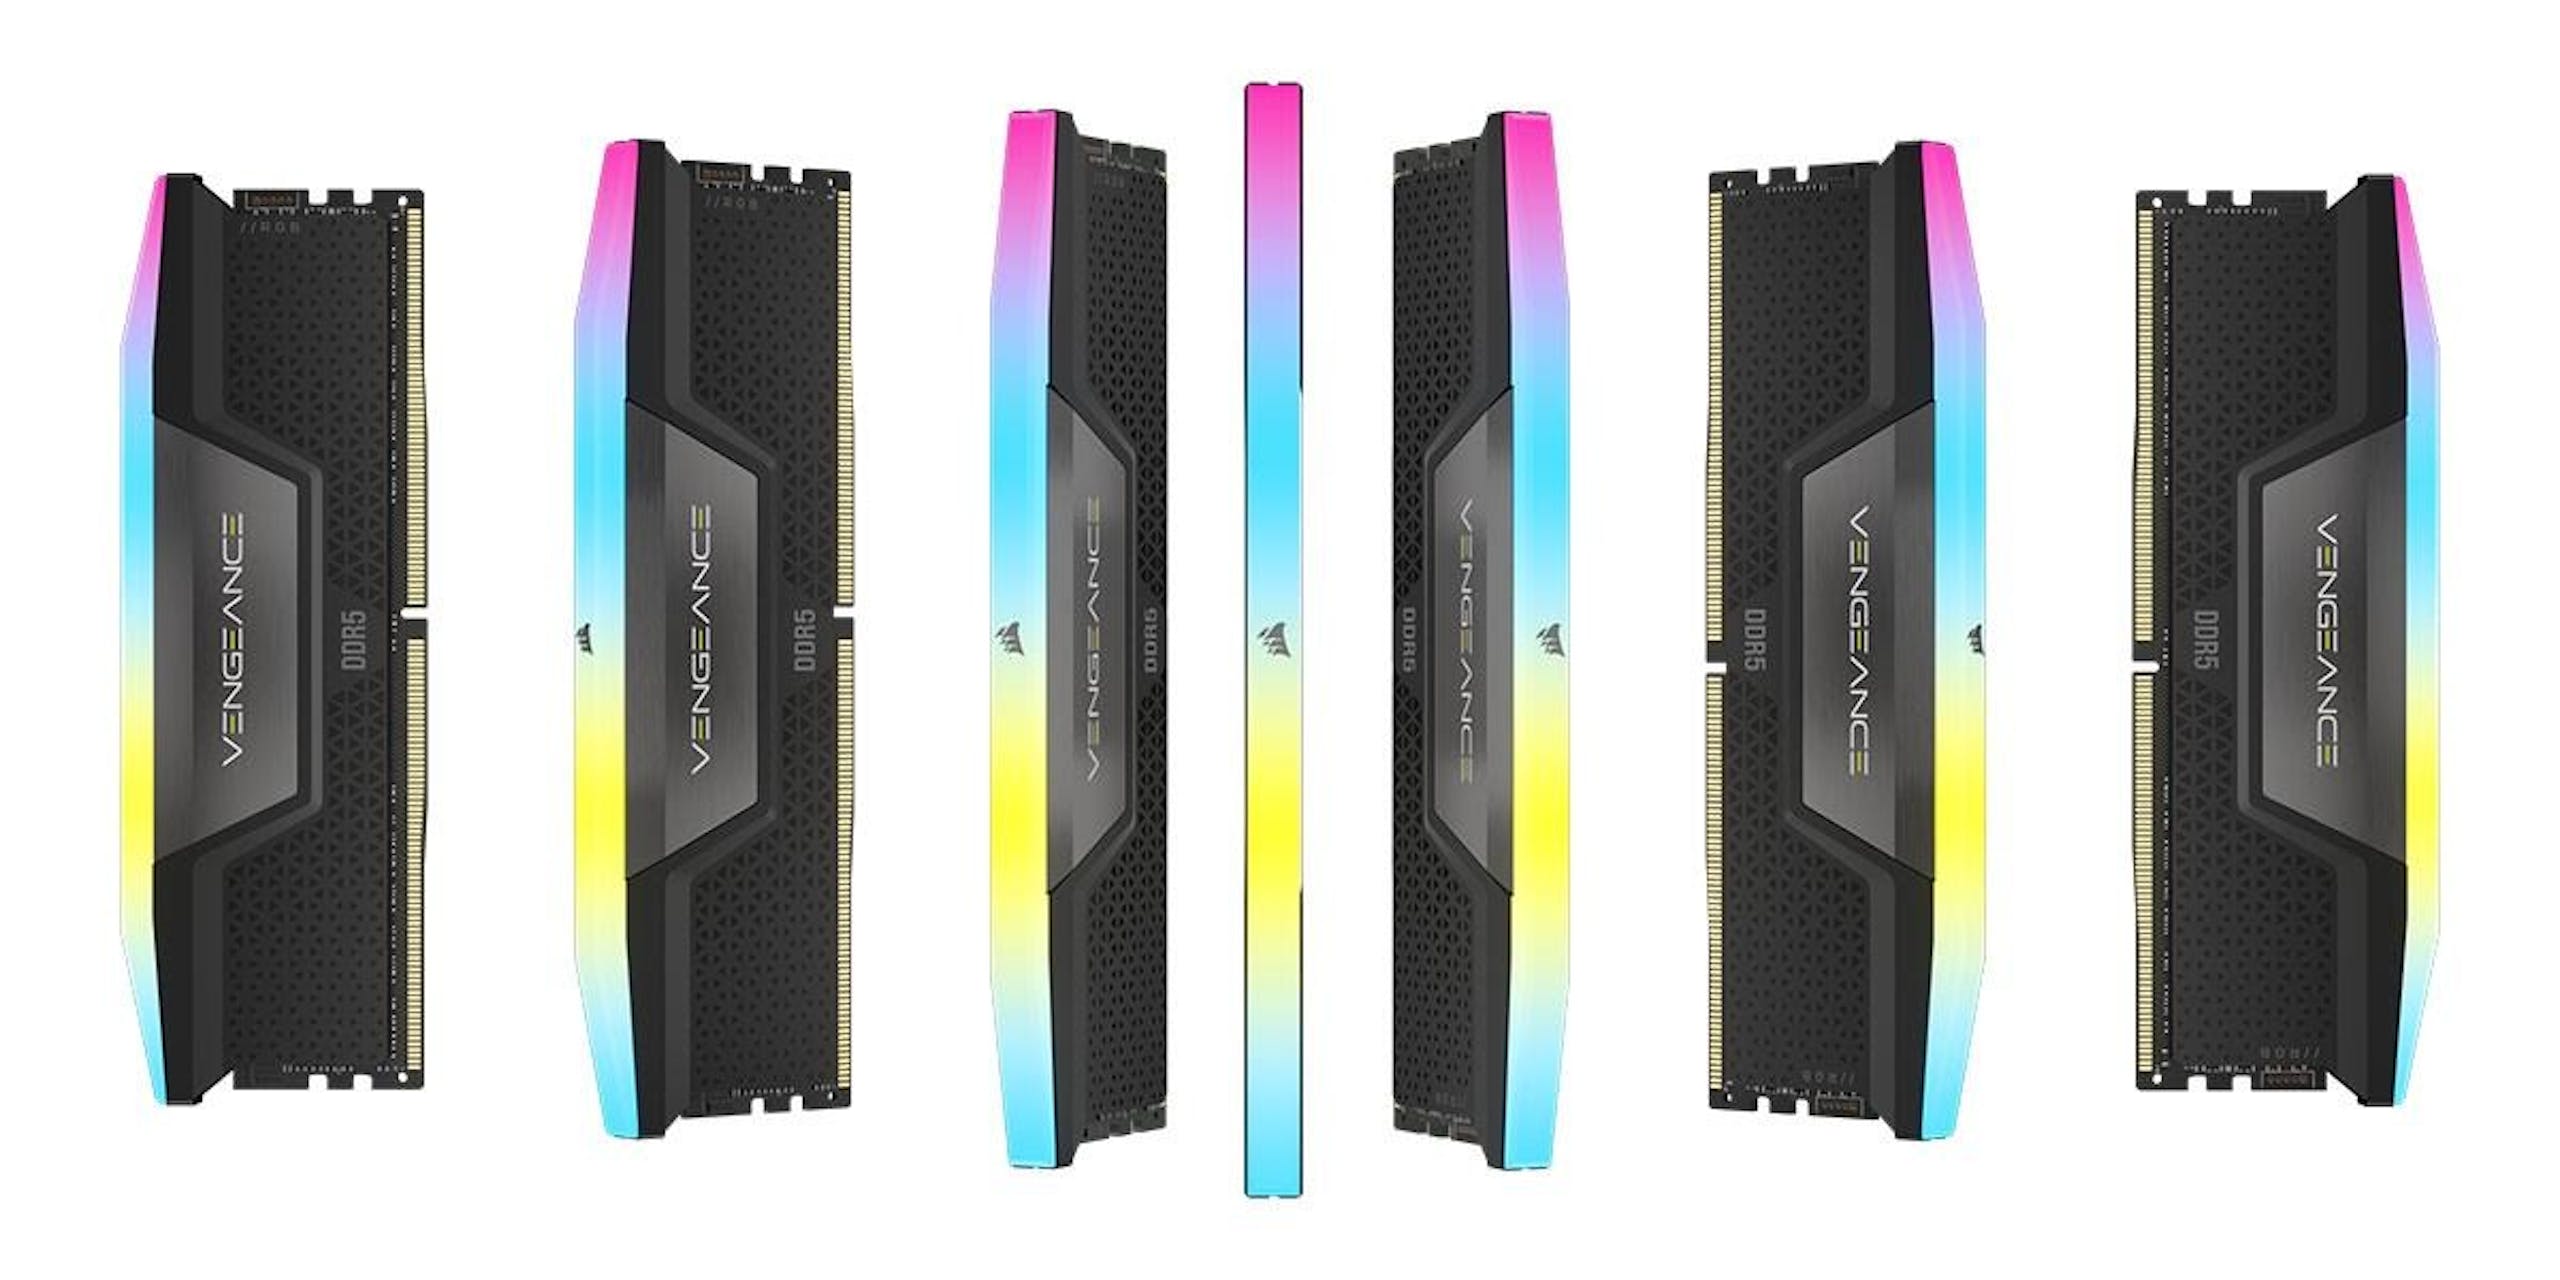  CORSAIR presenta i nuovi kit di memoria DDR5 da 48 GB, 96 GB e 192 GB